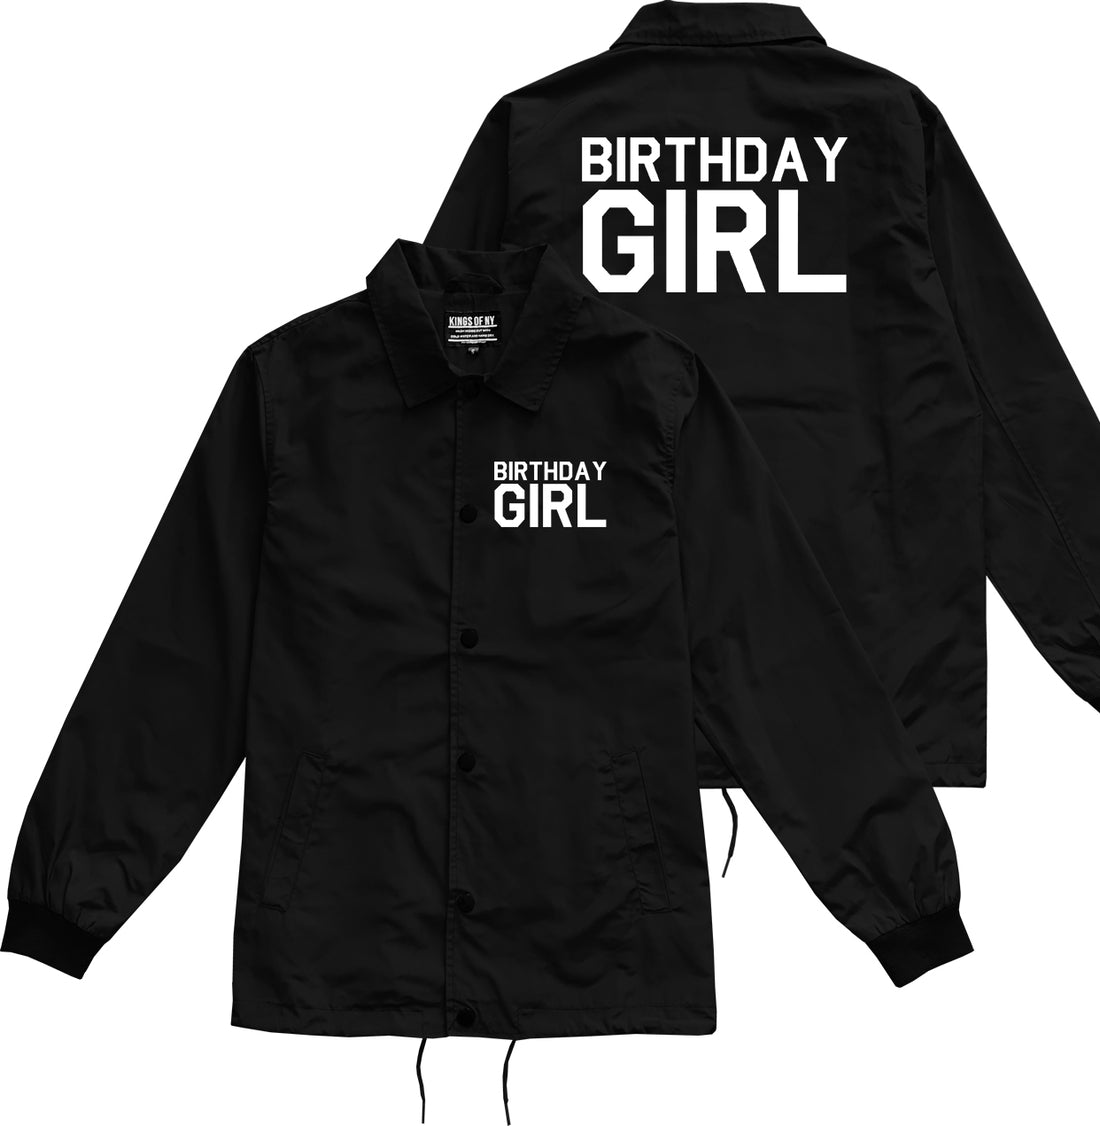 Birthday Girl Black Coaches Jacket by Kings Of NY